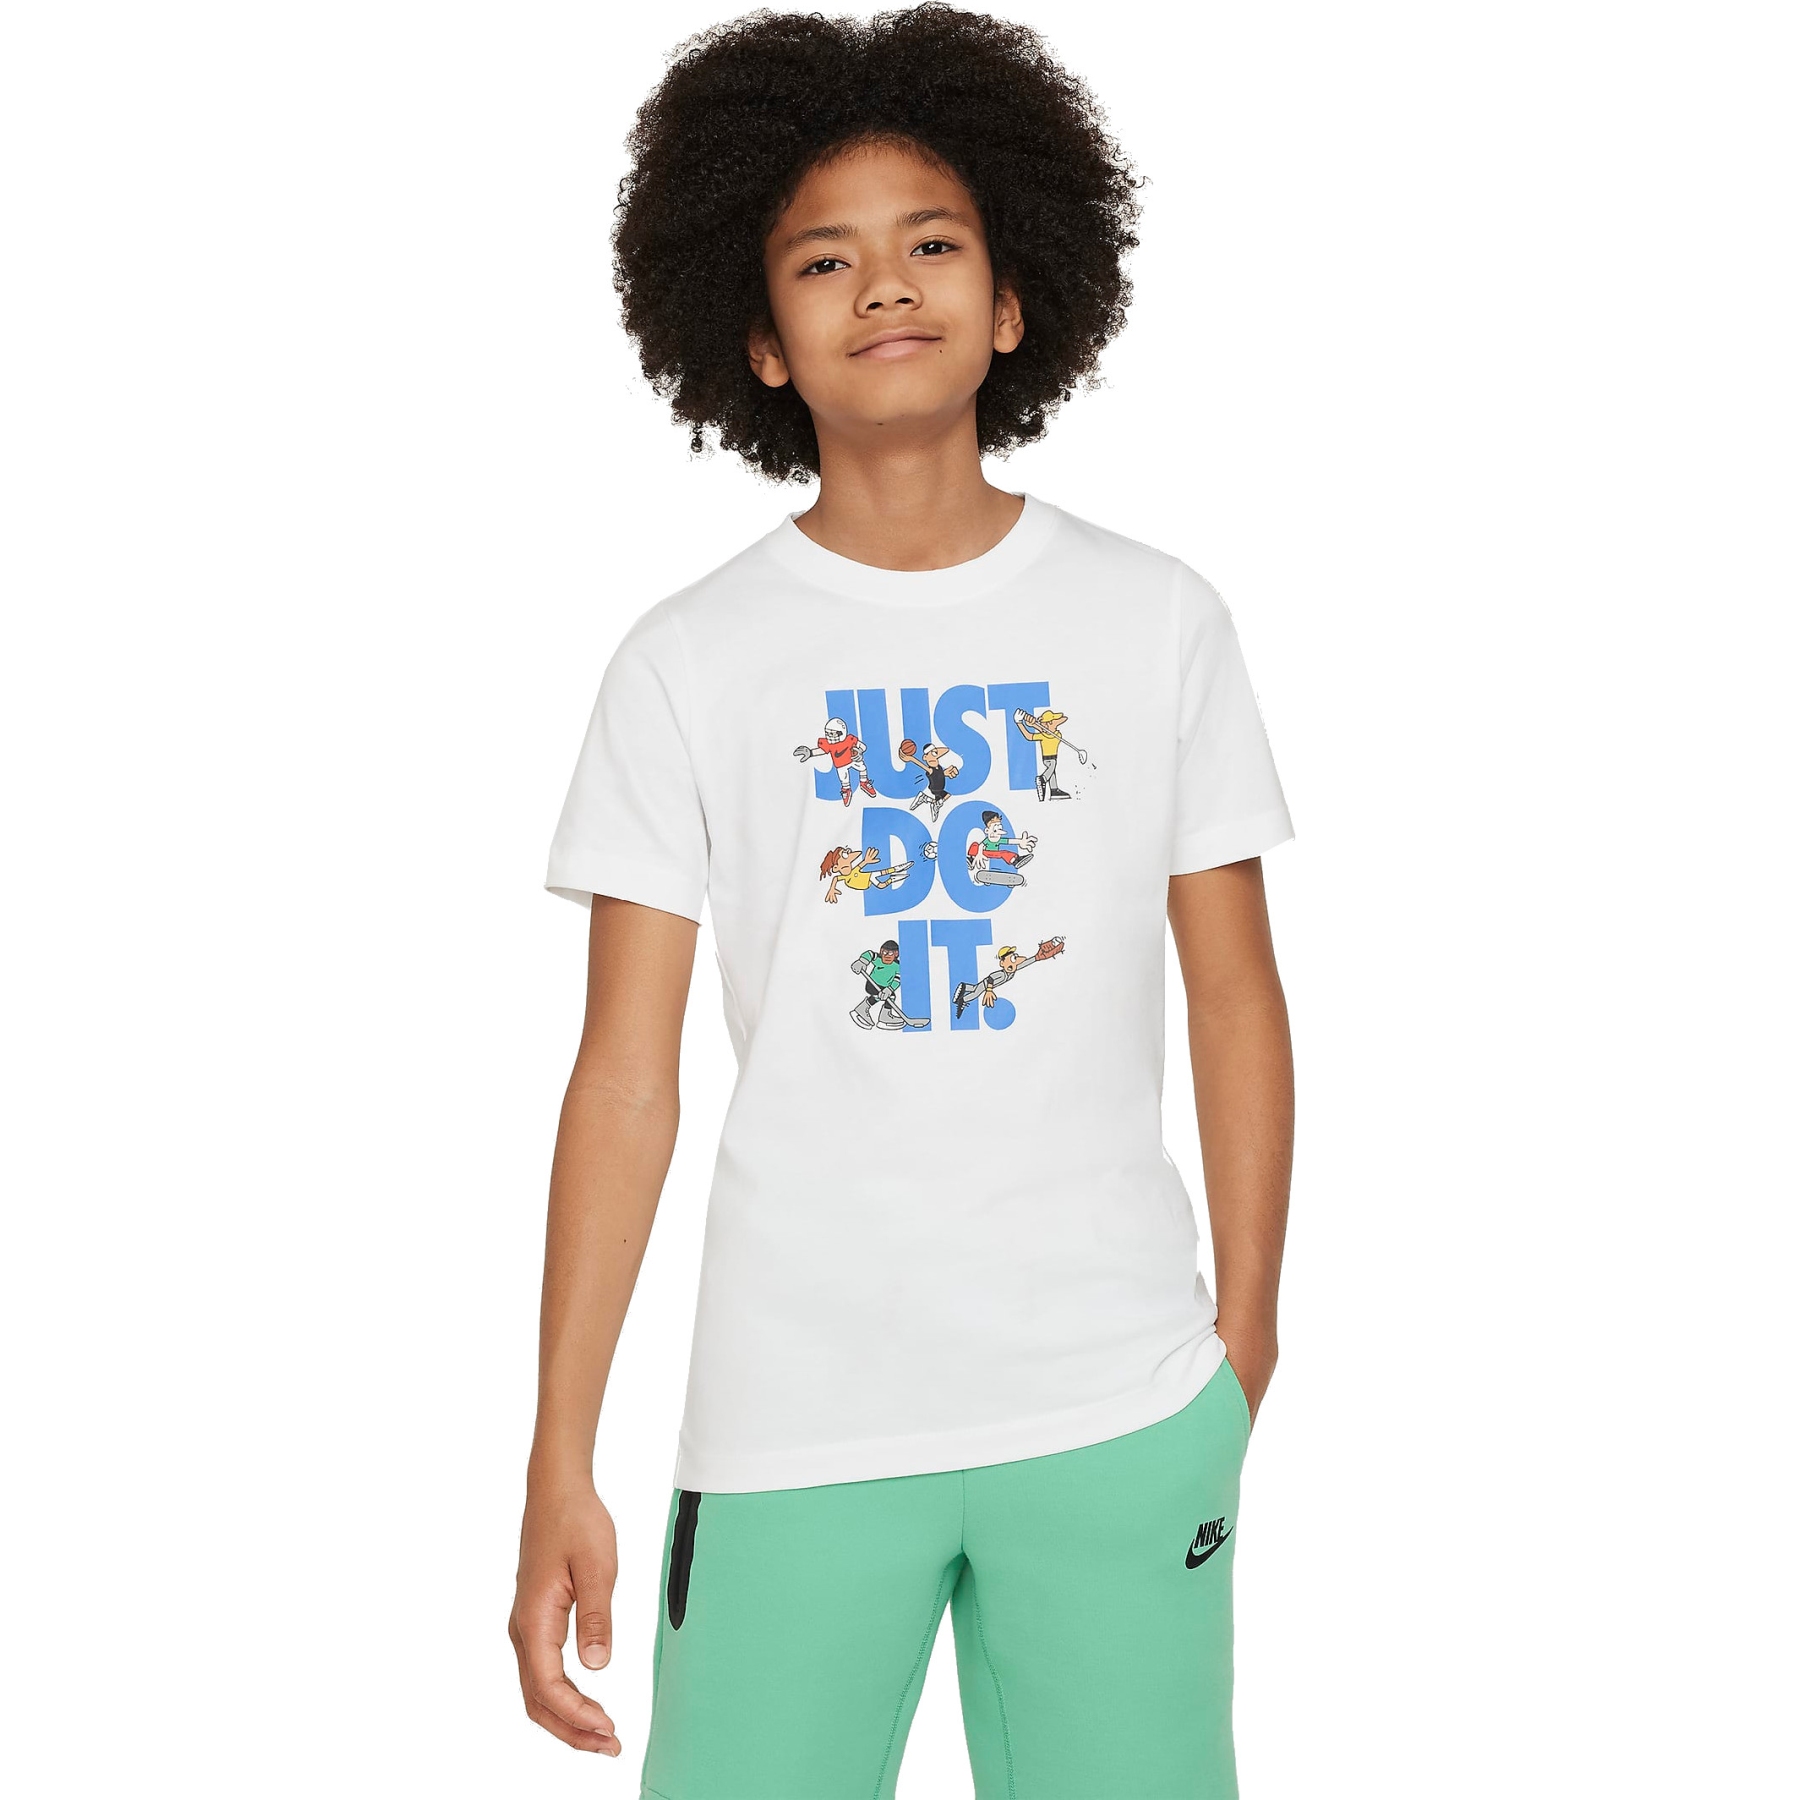 Produktbild von Nike Sportswear T-Shirt für ältere Kinder - weiß FN9667-100